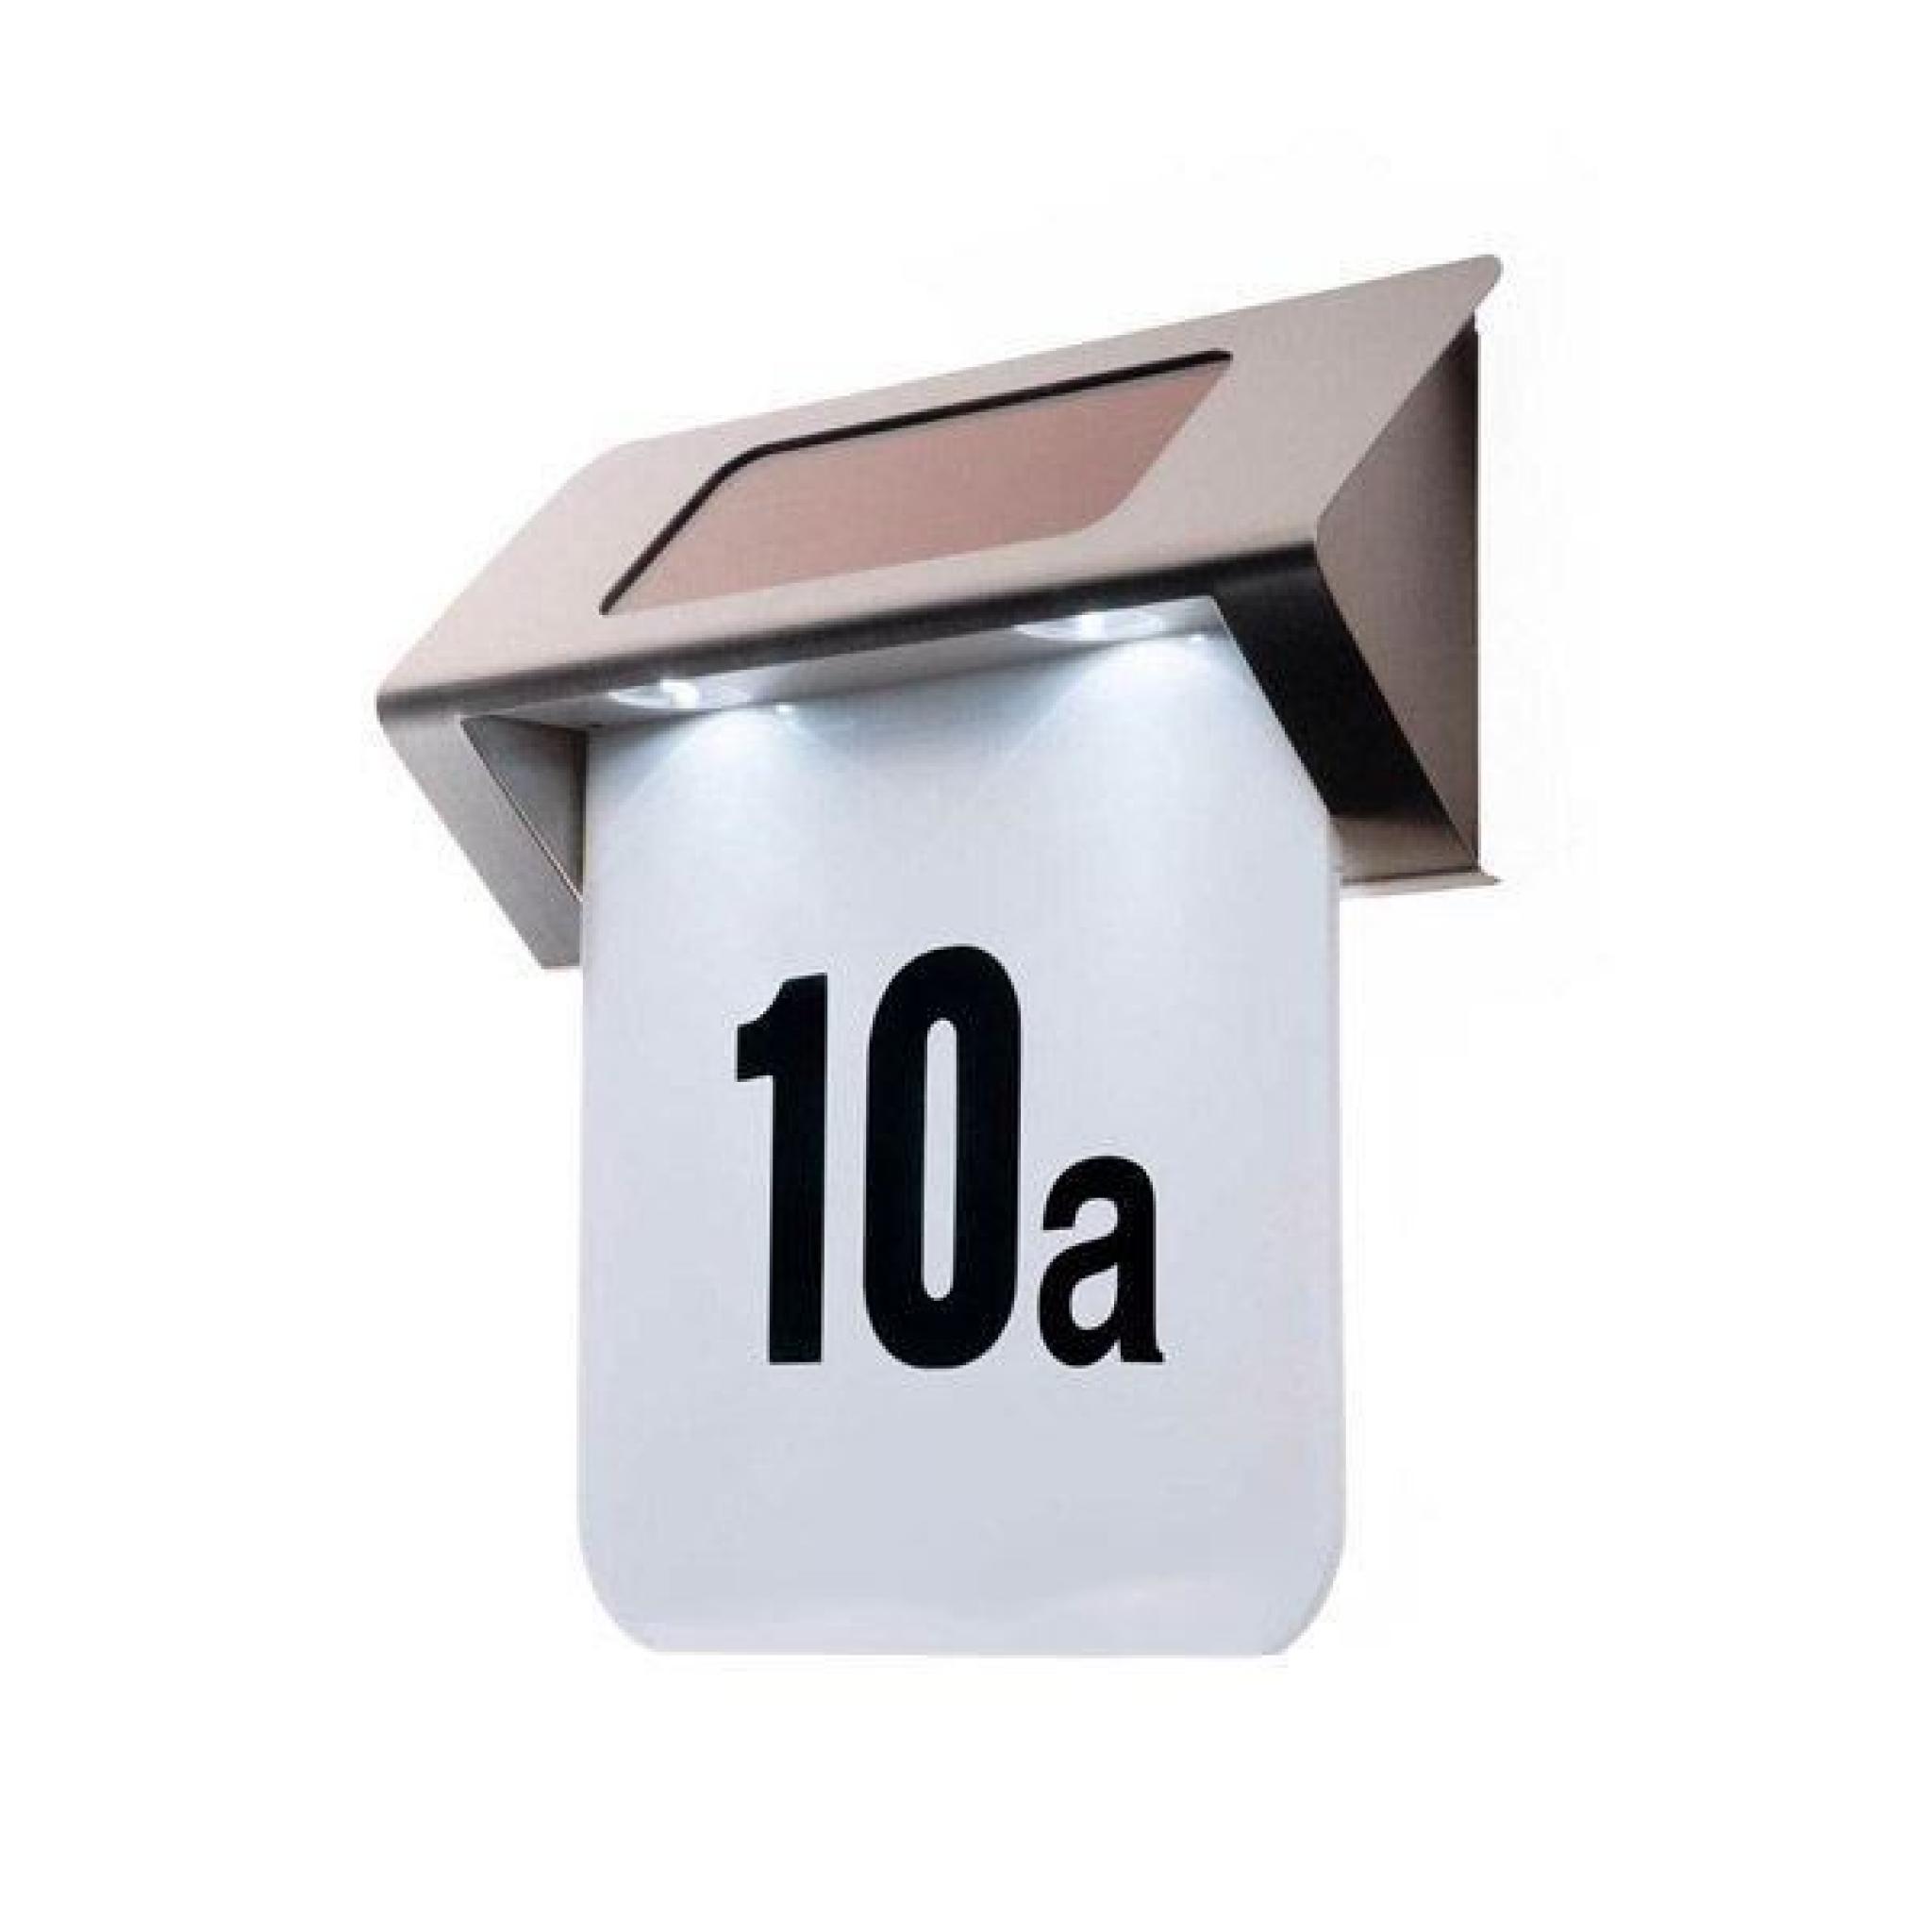 Lampe solaire - Numéro de maison - LED - Inox